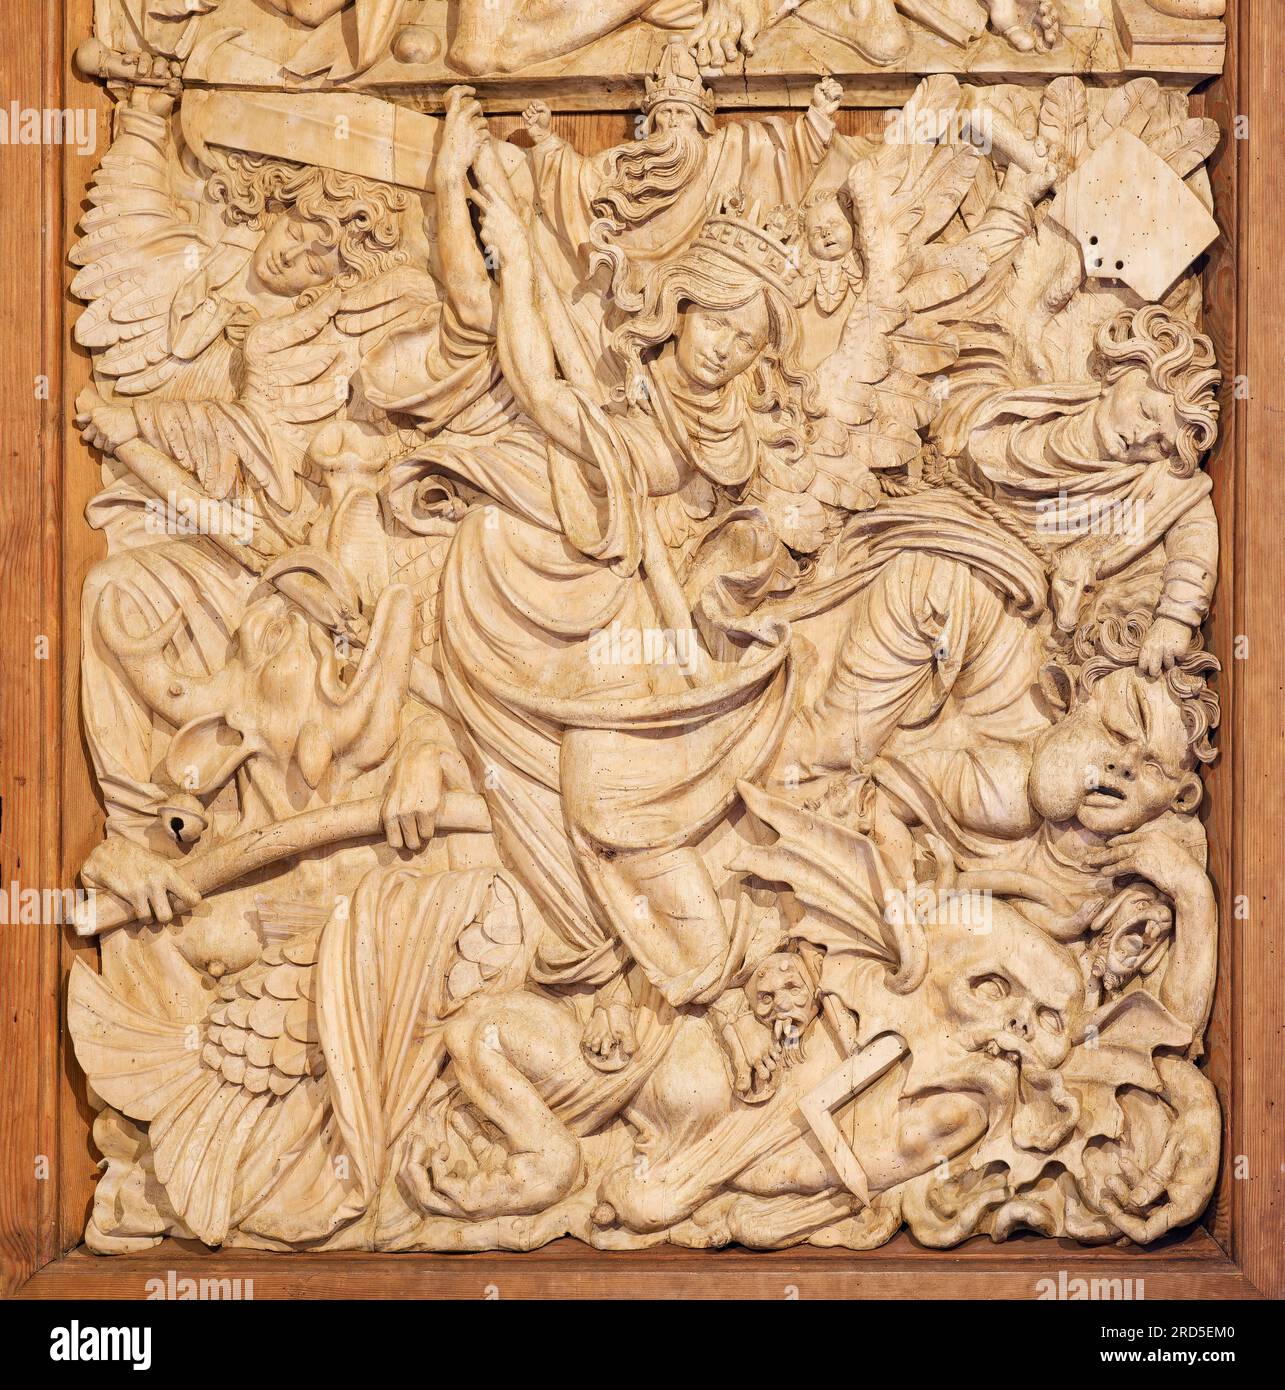 Hell's Fall aussi Angel's Fall, panneau en relief, détail de l'aile latérale autel retable, autel sculpté de la Vierge Niederrotweil, gothique tardif, maître sculpteur Banque D'Images